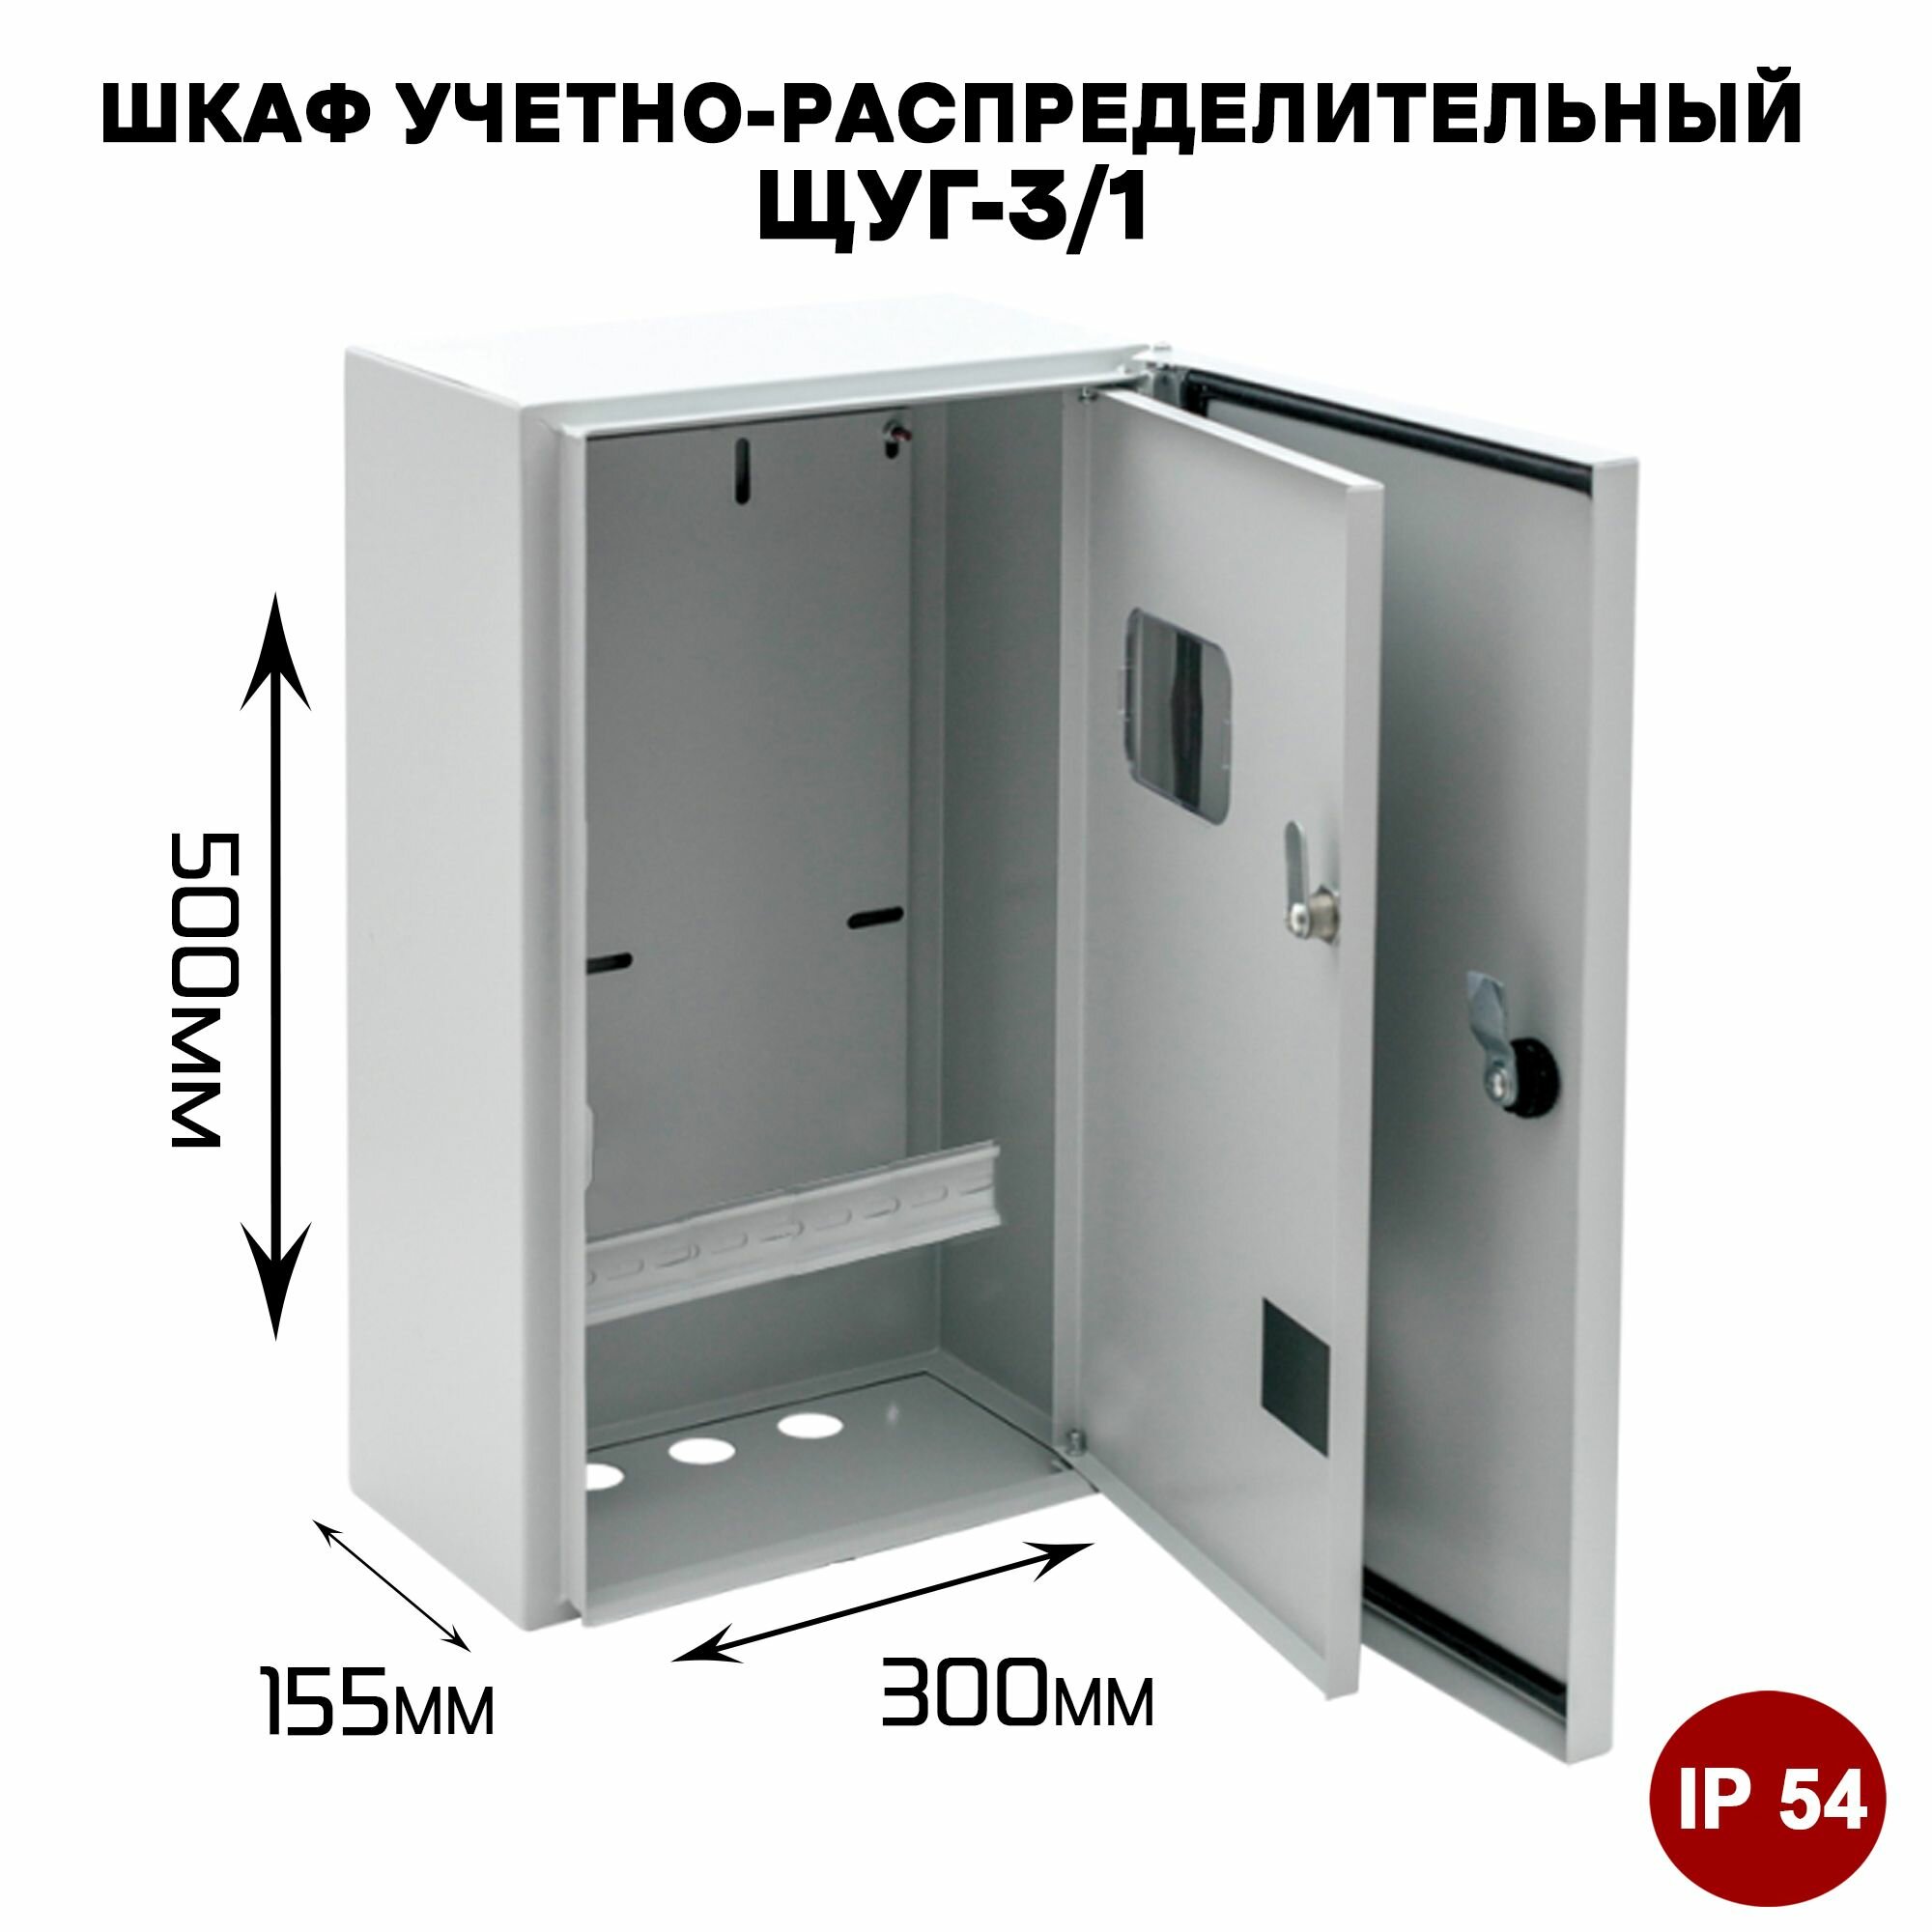 ЩУГ-3/1 IP54 Шкаф учетно-распределительный уличного исполнения (500x300x155 мм)